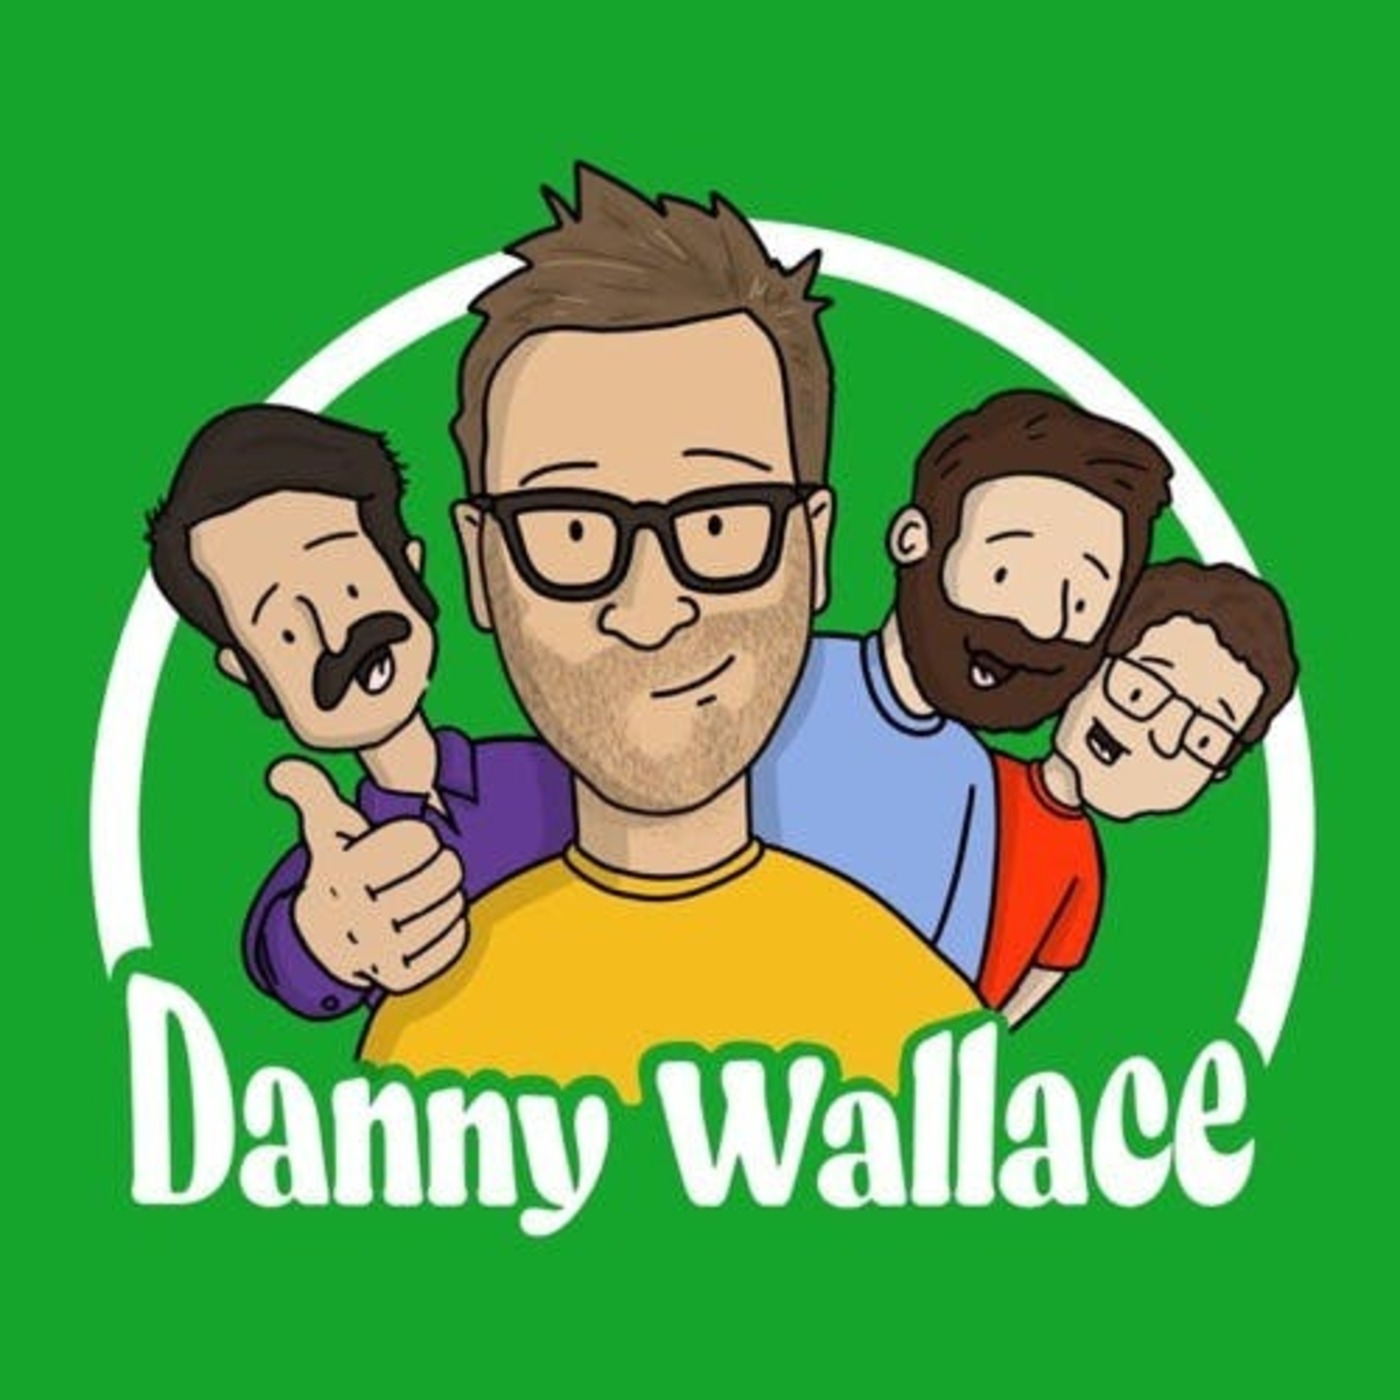 Episode 214, Part 1: Danny Wallace